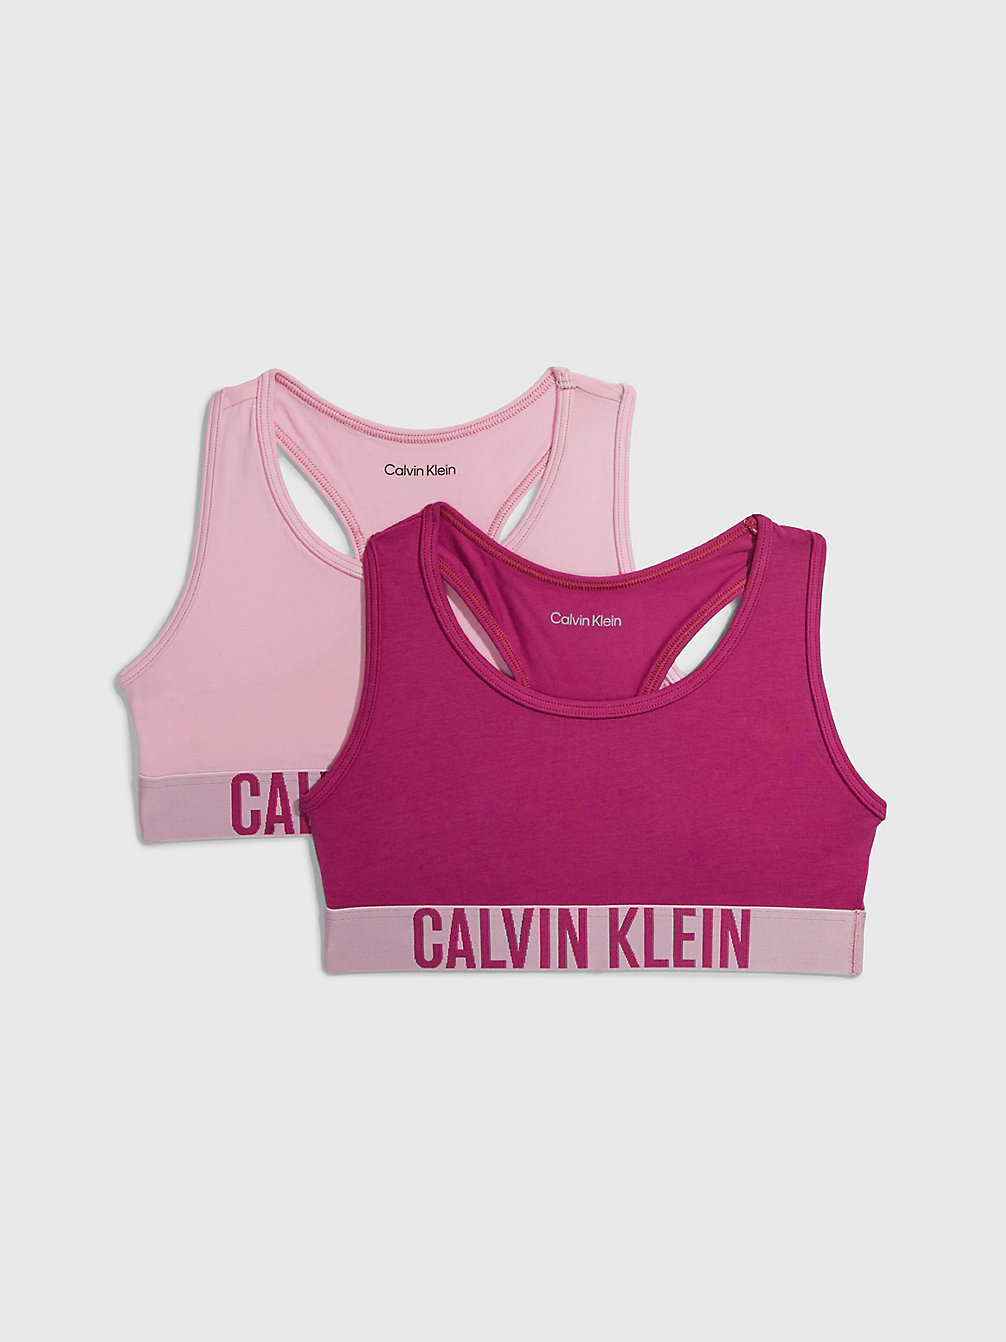 CLASSICPINK/PASSIONPURPLE 2 Pack Girls Bralettes - Intense Power undefined girls Calvin Klein